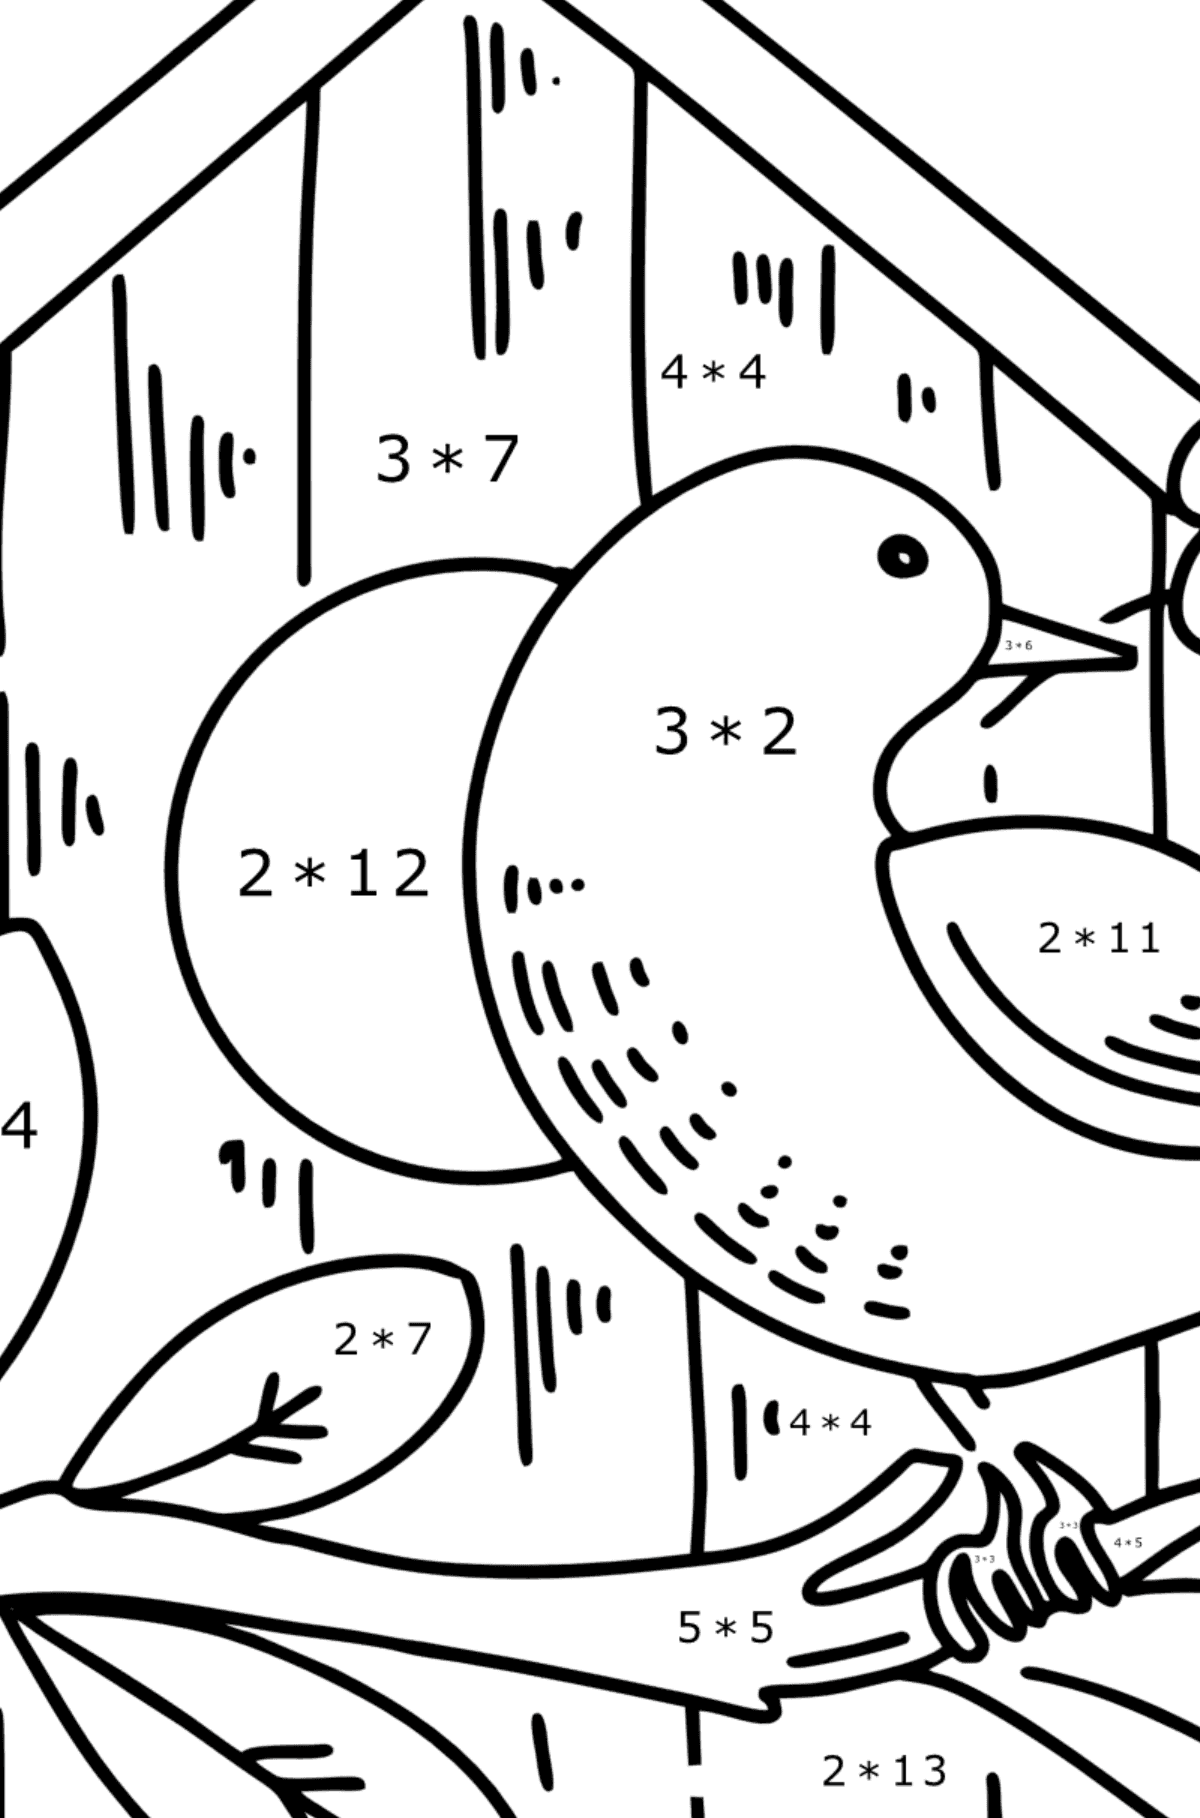 Omalovánka špaček u ptačí budky - Matematická Omalovánka - Násobení pro děti